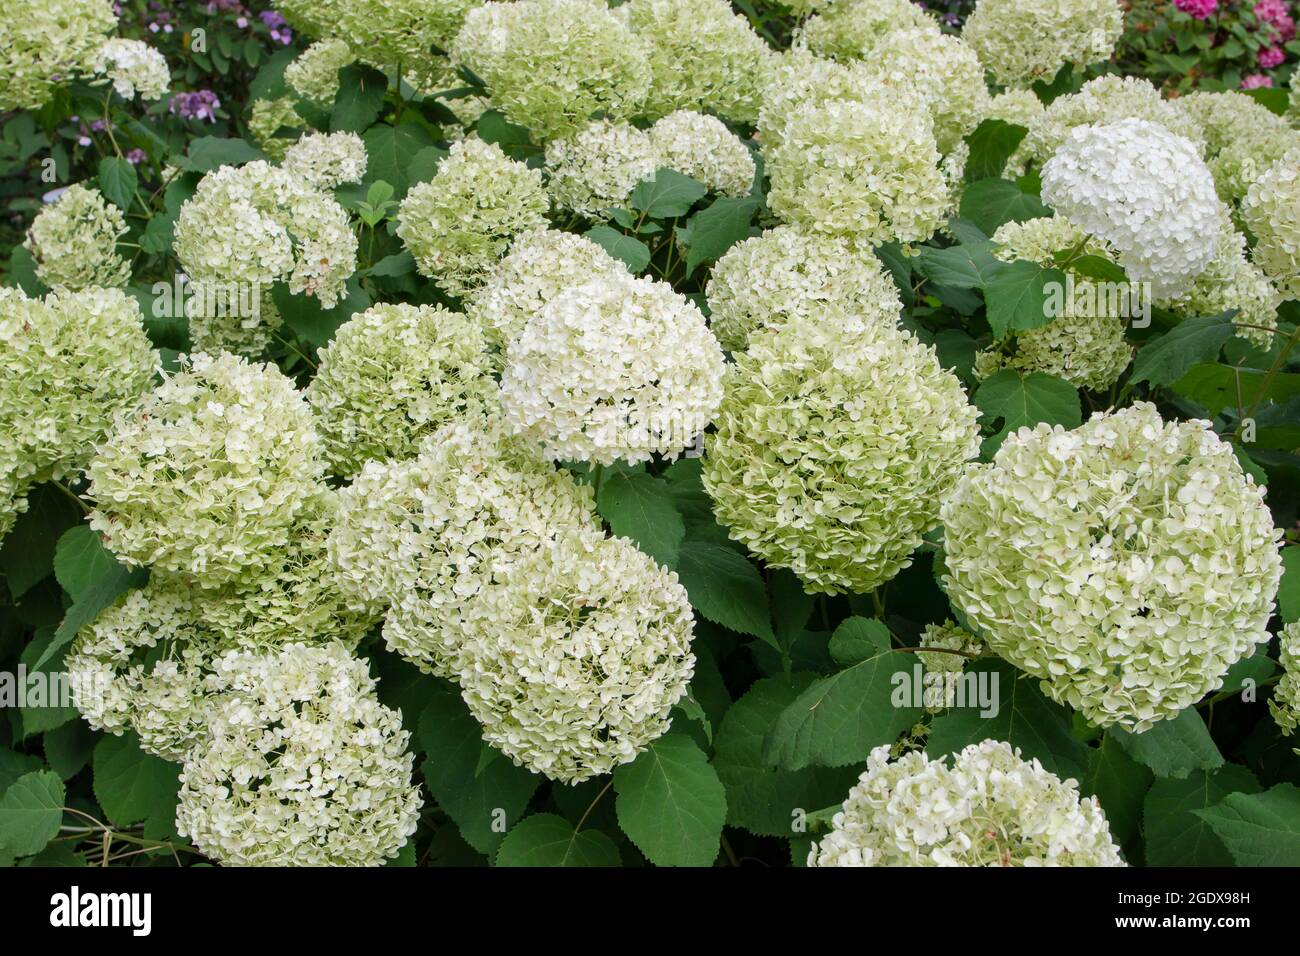 Idrangea liscia o idrangea selvatica o sevenbark o fiore bianco di pecora bloom. Idrangea arborescens pianta fiorente. Foto Stock